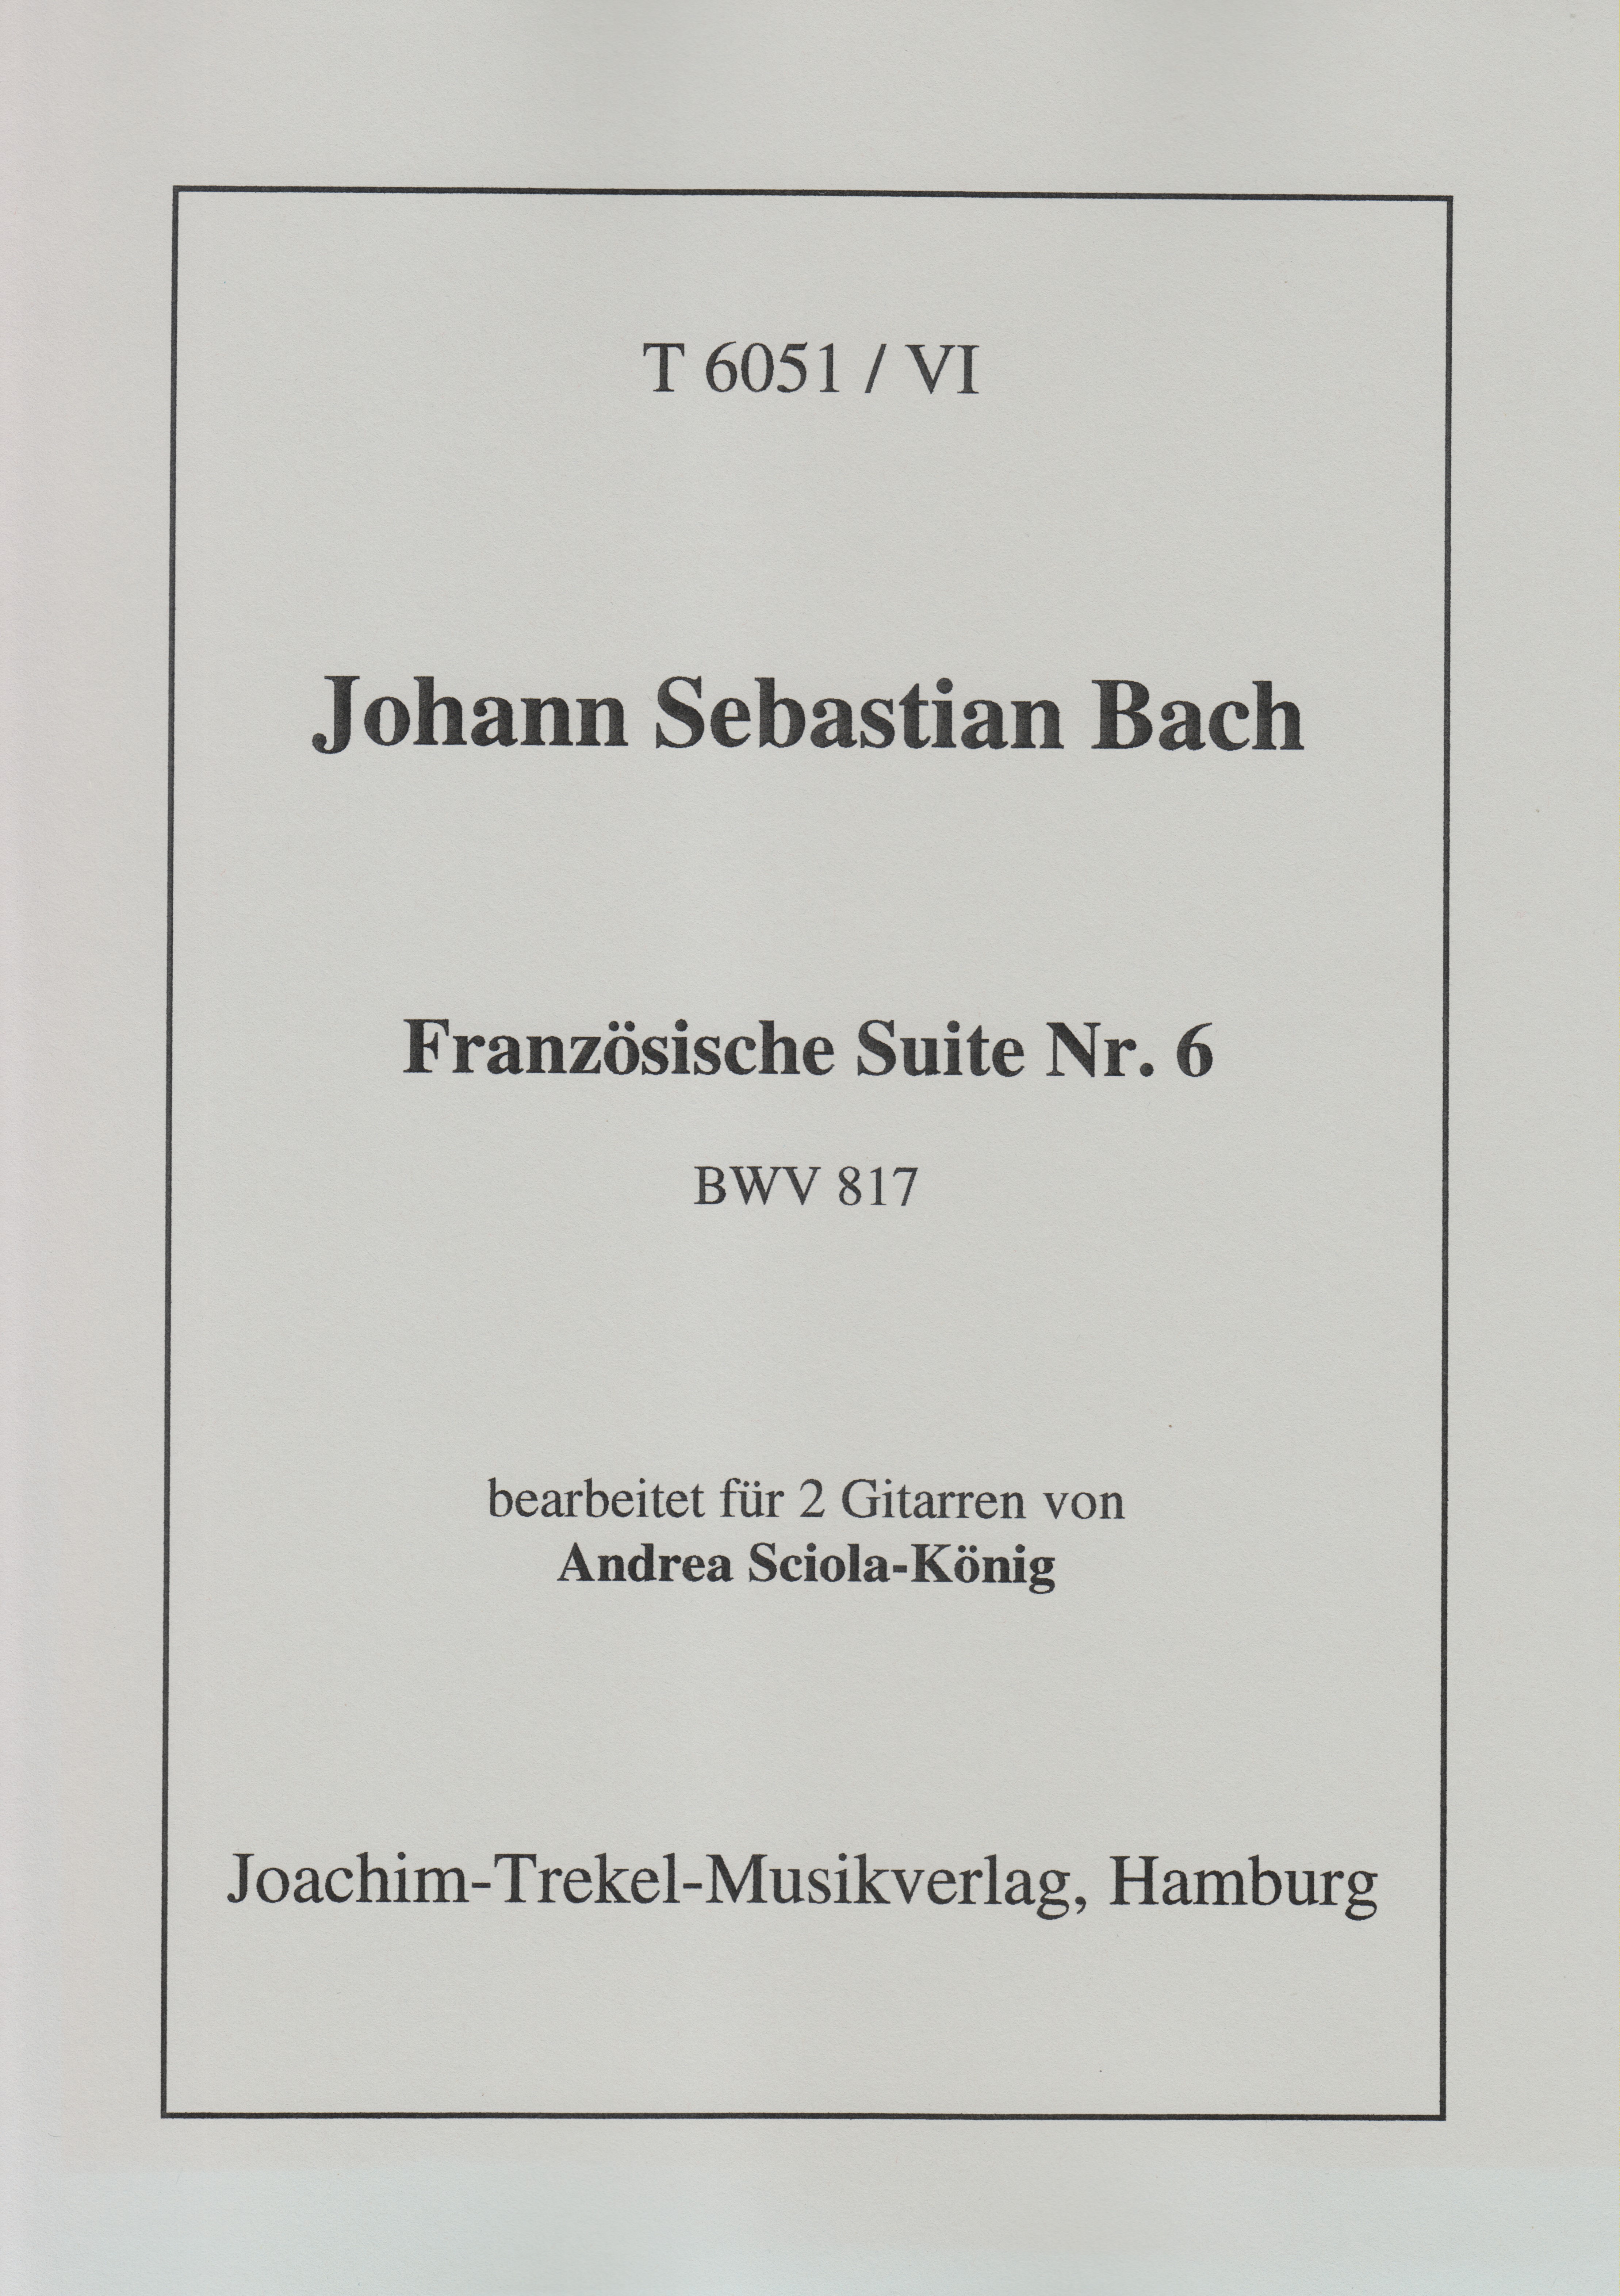 Französische Suite Nr. 6 BWV 817